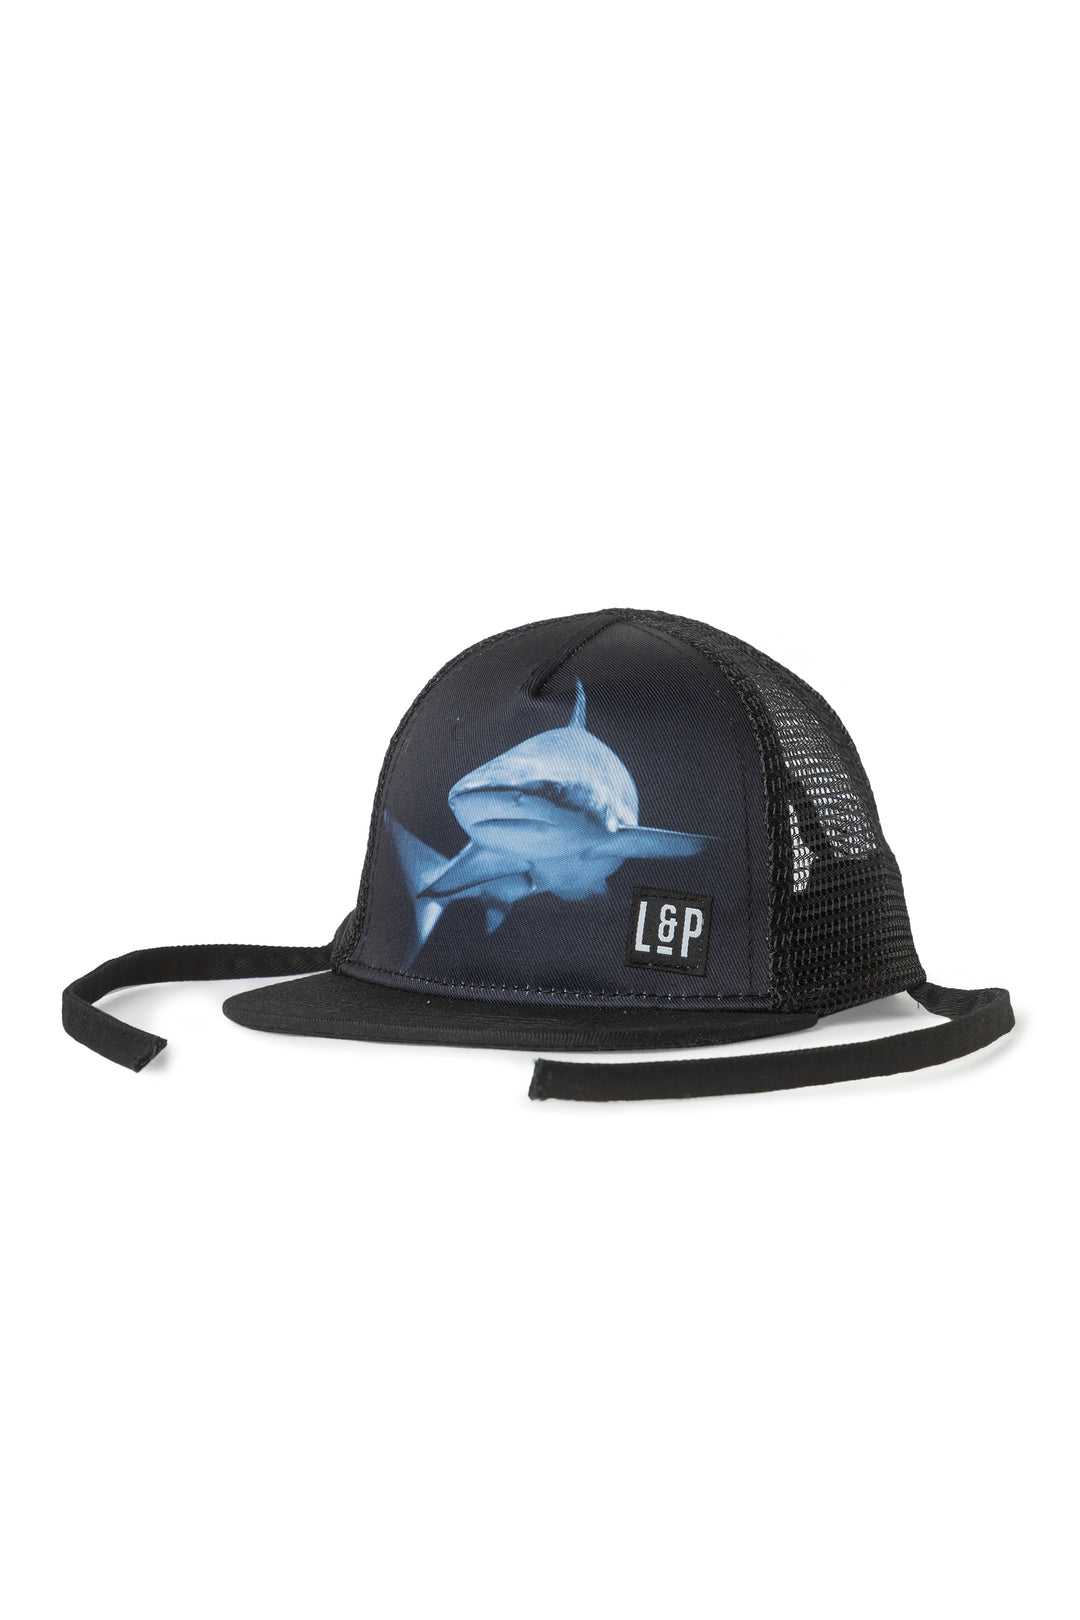 Shark series mesh cap - Fit Simplistic [Baby]